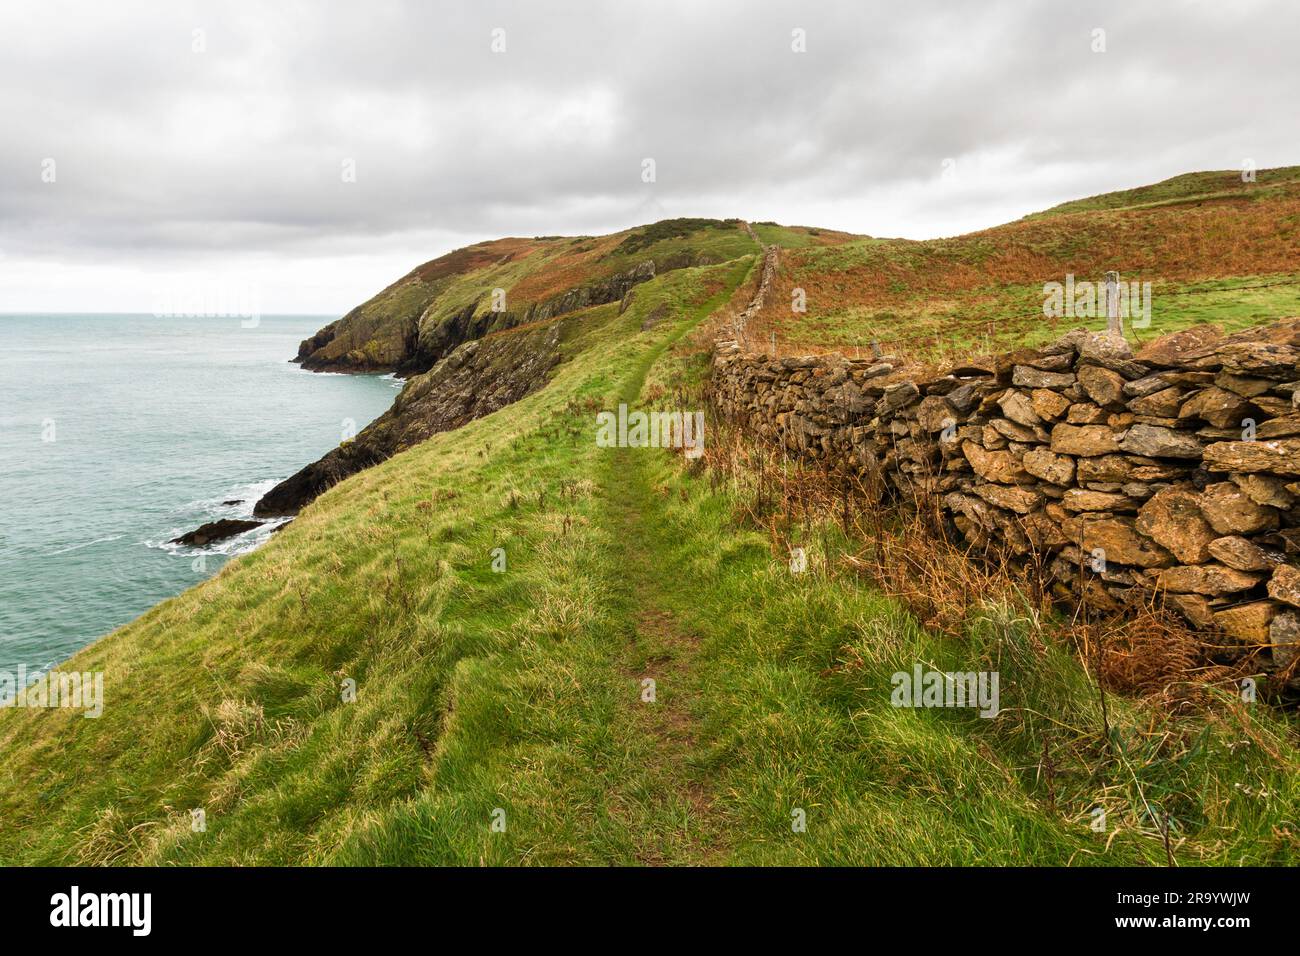 Anglesey North Coastal Path, Wales. Herbst- oder Herbstpfad mit trockener Steinmauer und Meer in der Ferne, Landschaft, Weitwinkel Stockfoto